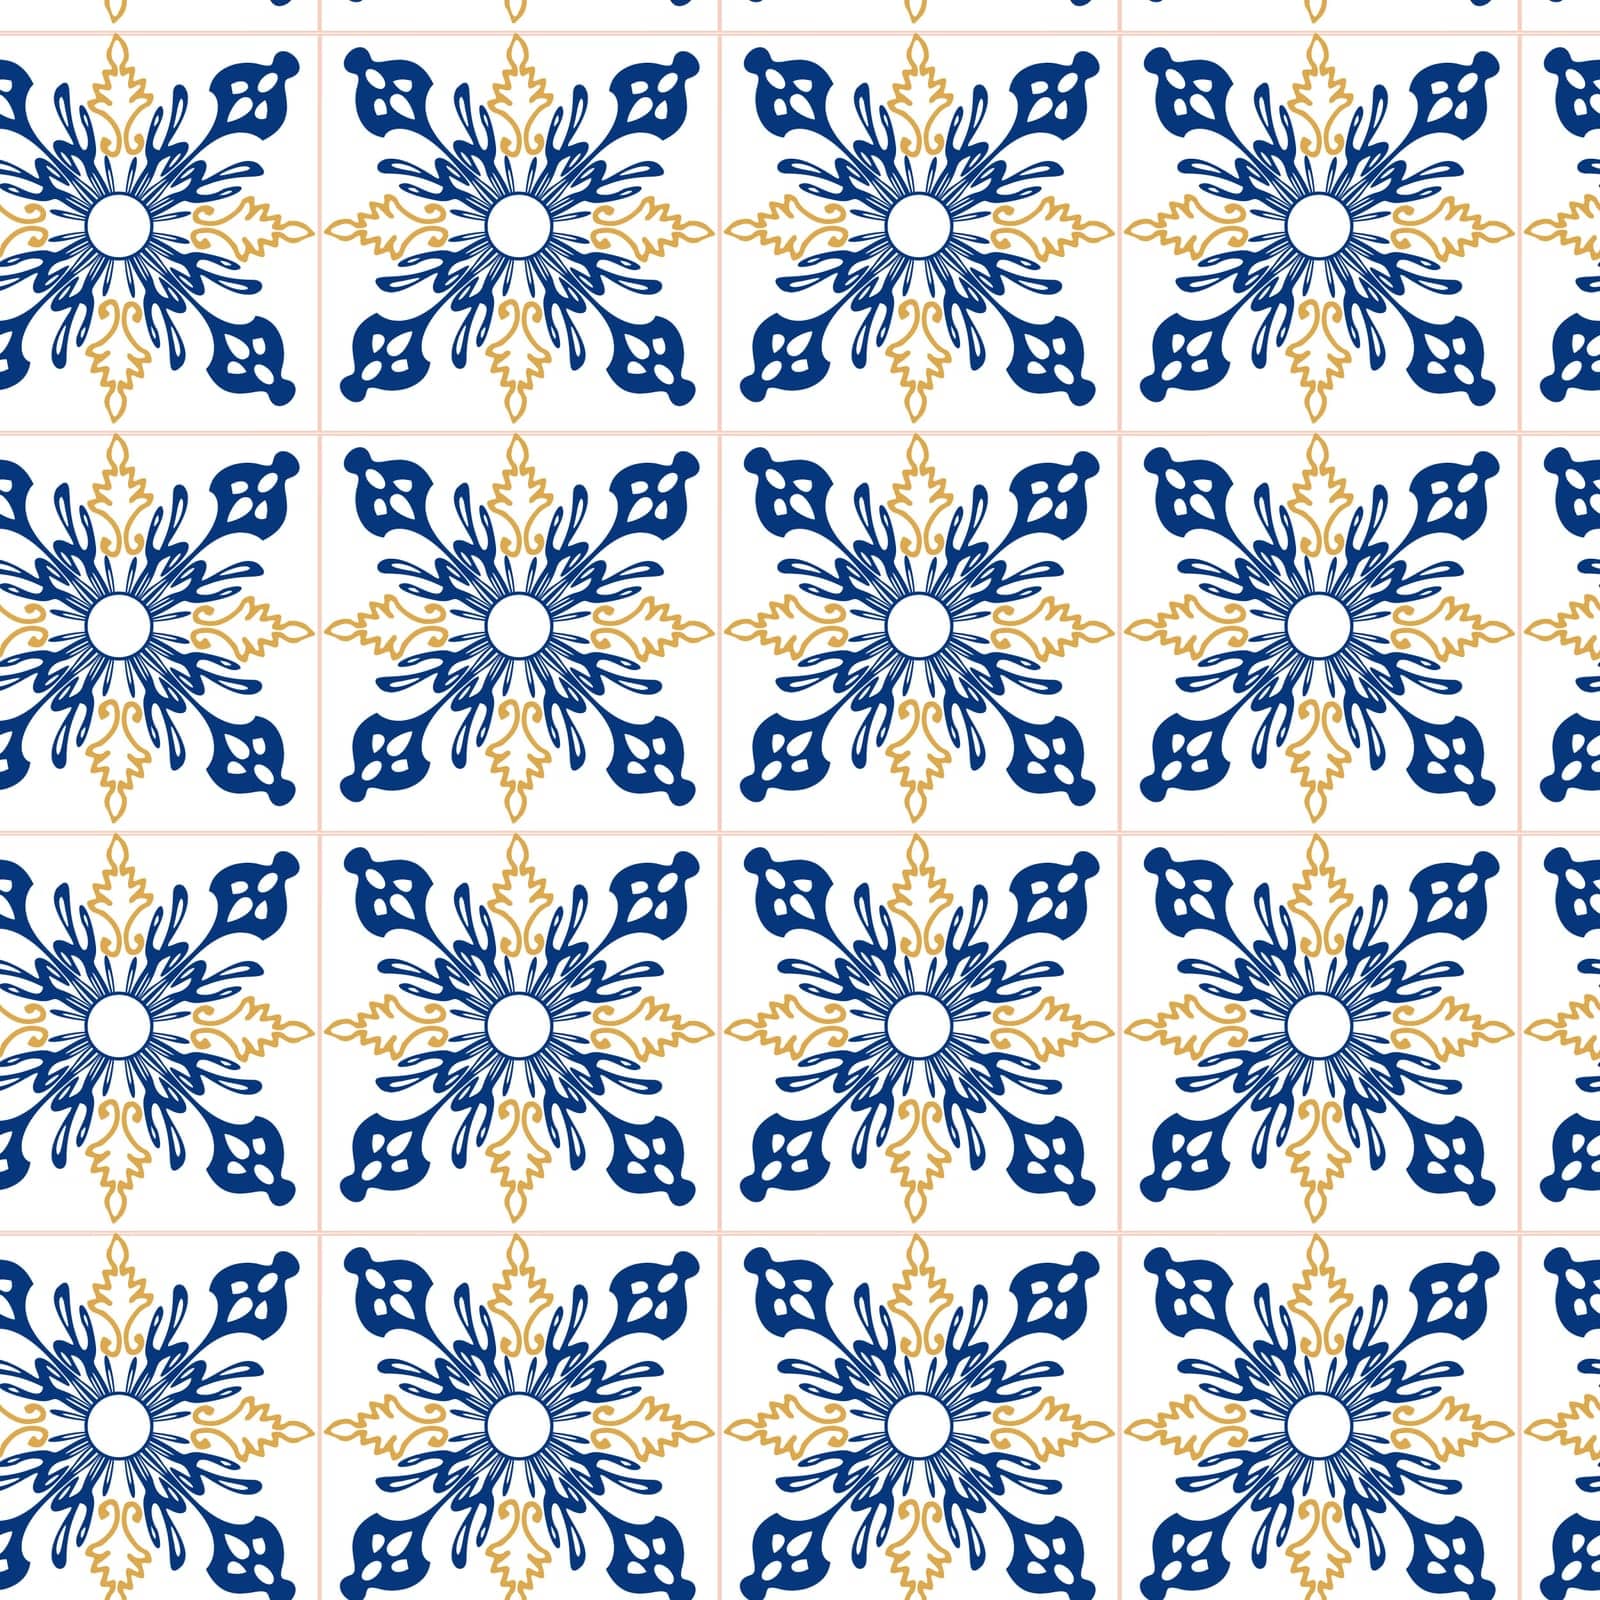 Azulejo blue and yellow seamless pattern by MintanArt